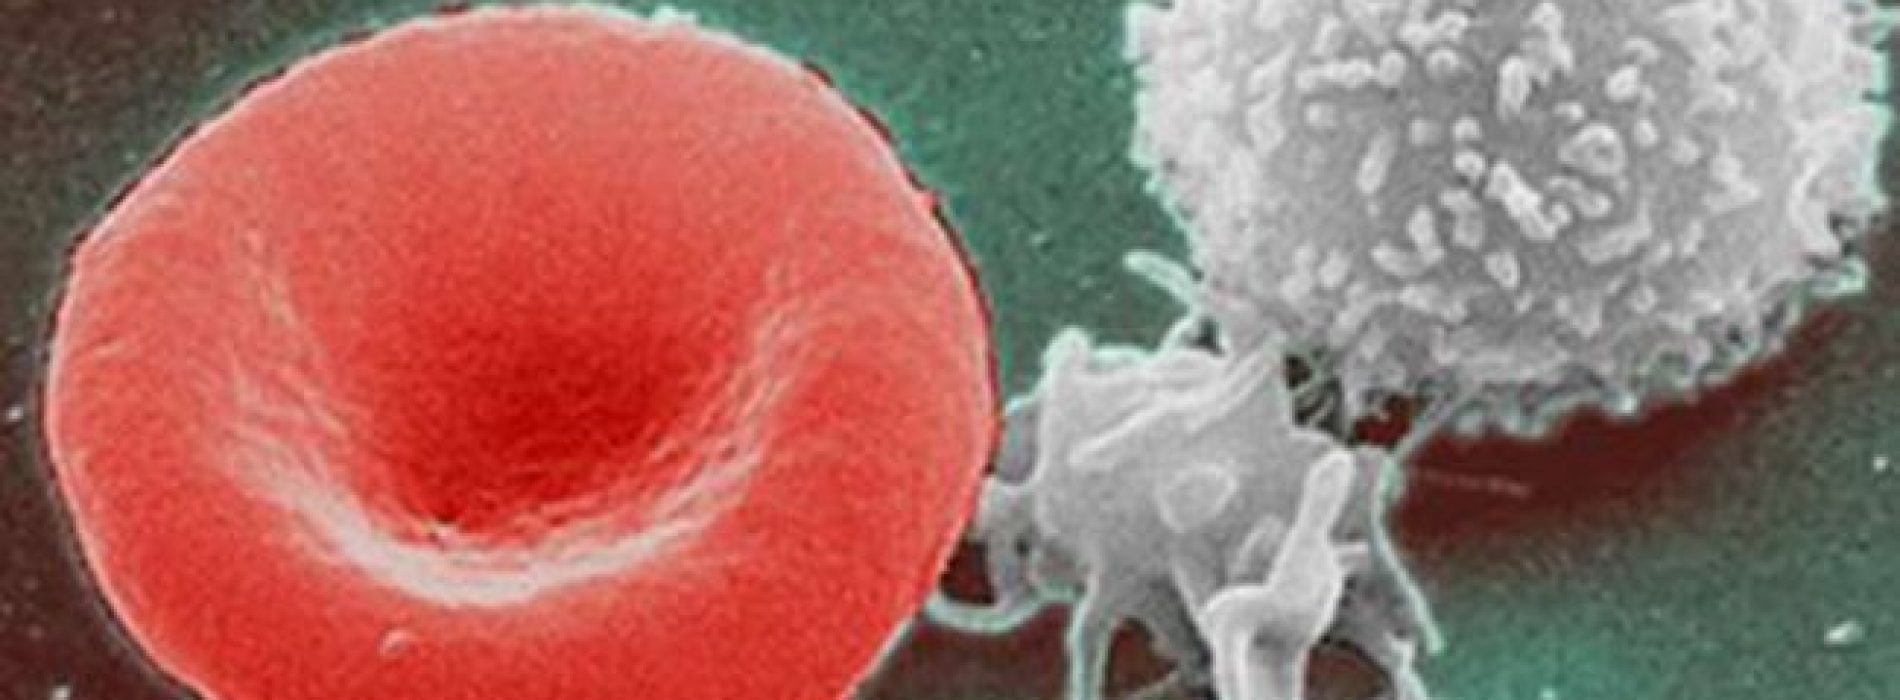 USC-onderzoekers ontdekken hoe ze het volledige immuunsysteem binnen 72 uur kunnen regenereren